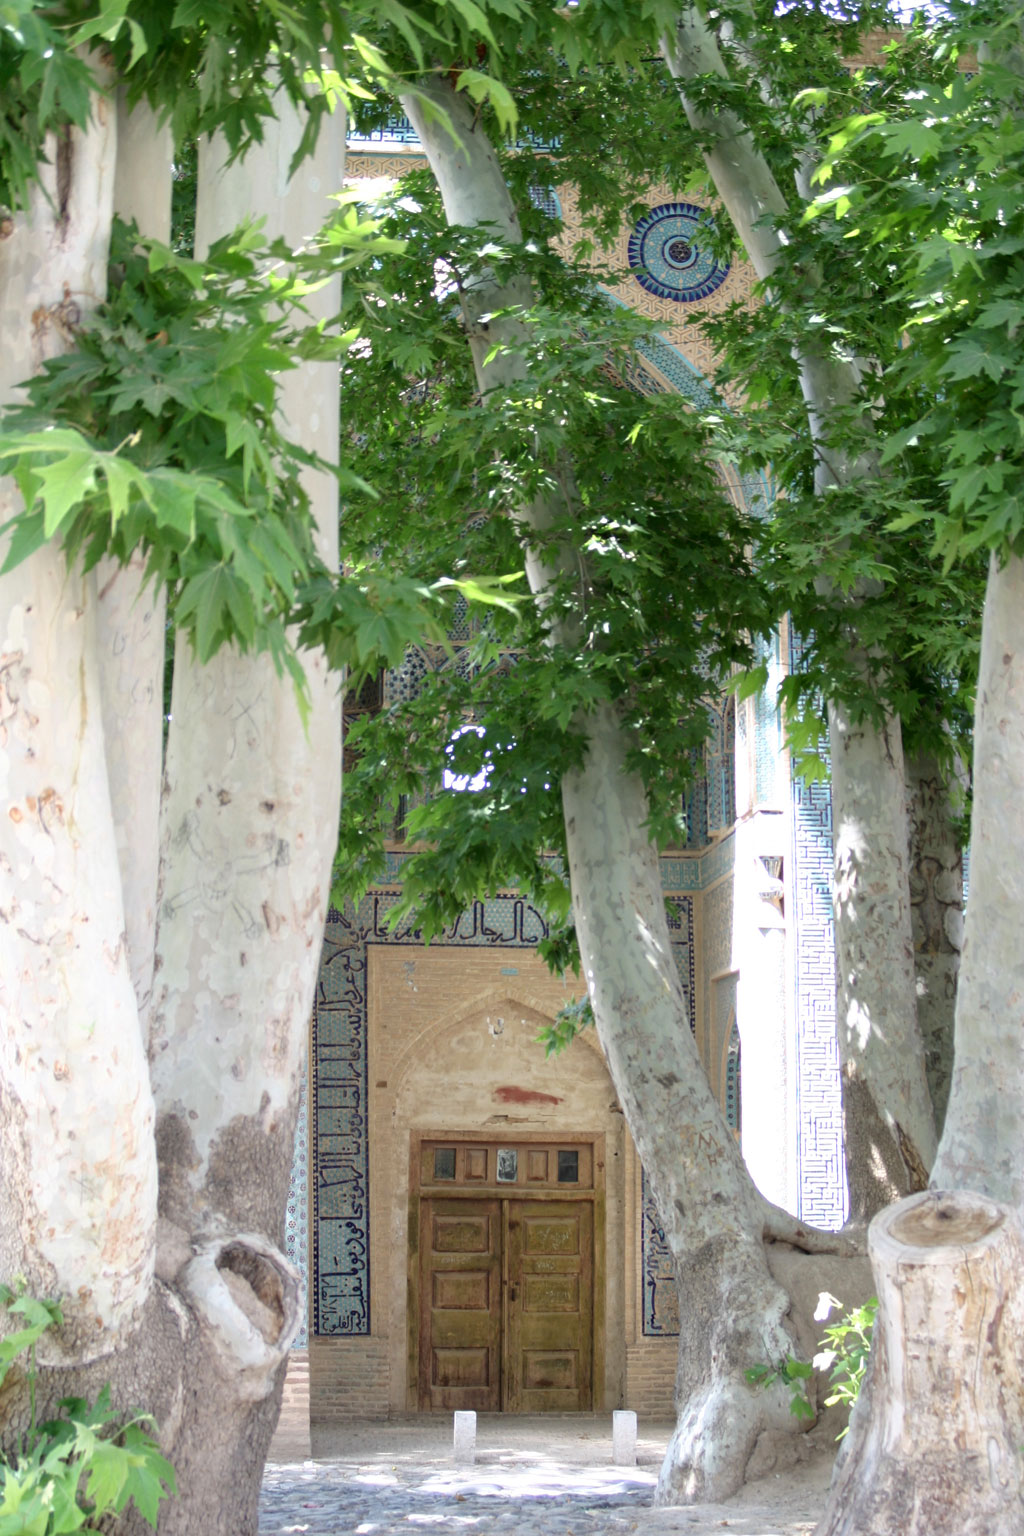  ورودی مسجد جامع نطنز و درخت چنار کهنسال روبروی آن